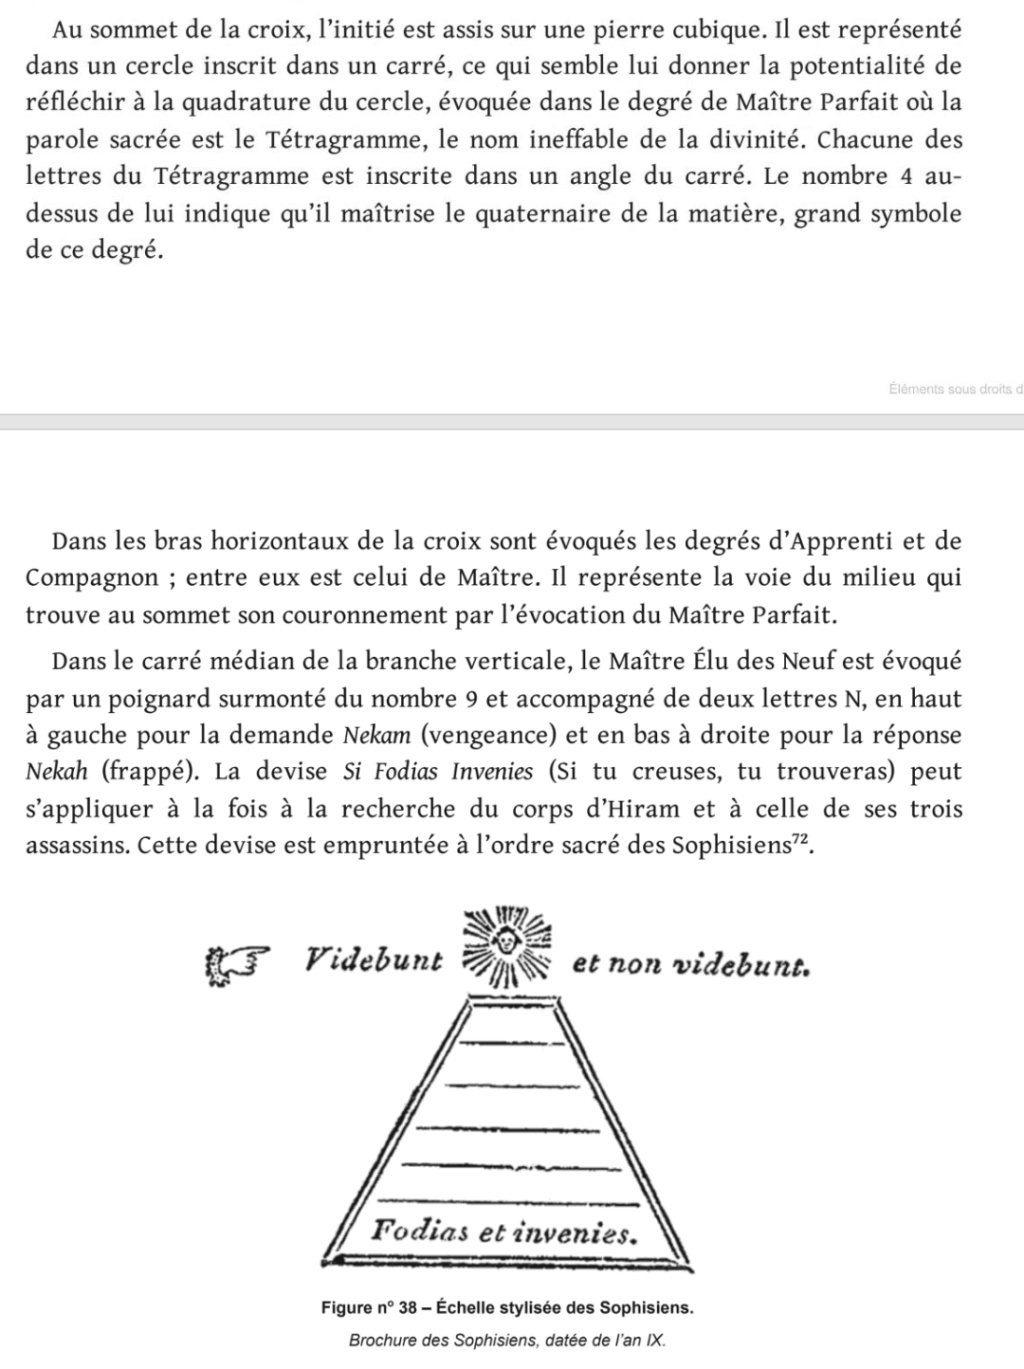 Esotérisme et symbolisme - Page 5 Scree784